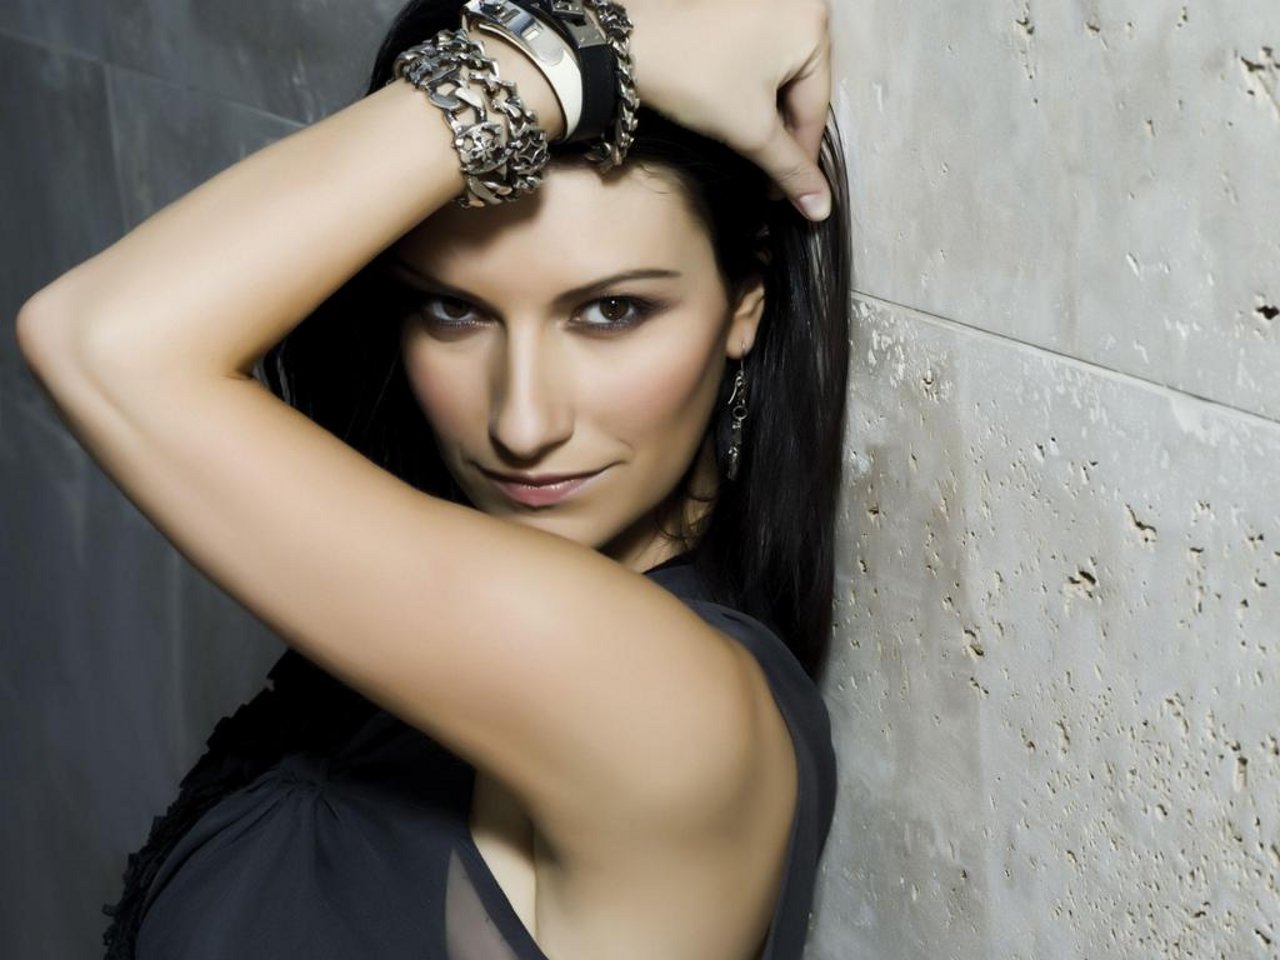 Laura-Pausini-dopo-il-successo-americano-tornerà-in-Italia-per-raduno-suoi-fan